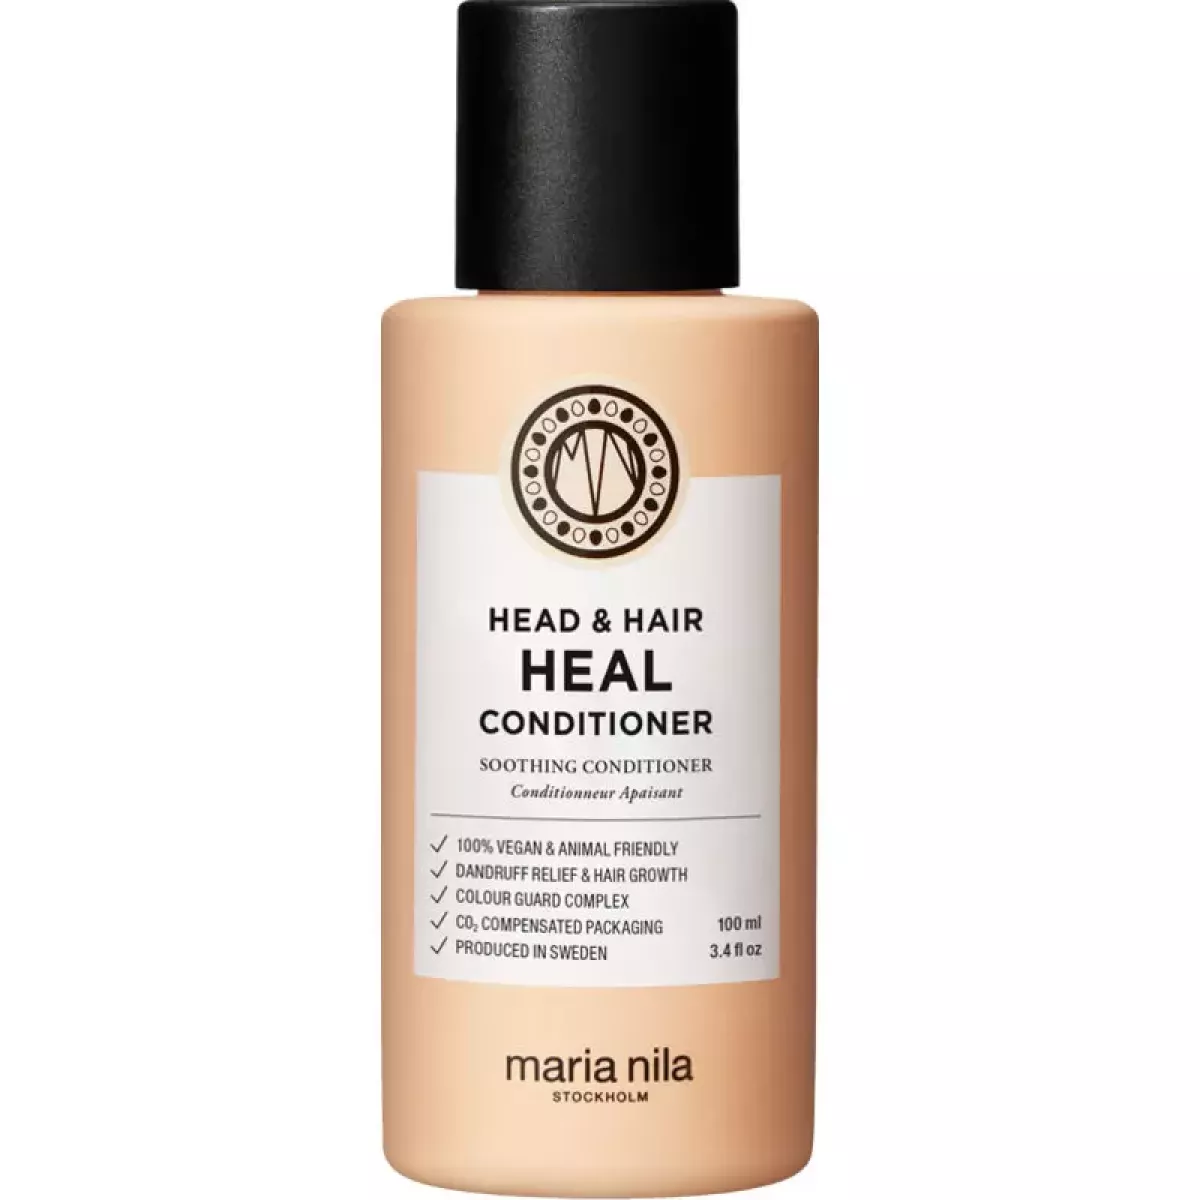 #1 - Maria Nila Head & Hair Heal Conditioner 100 ml